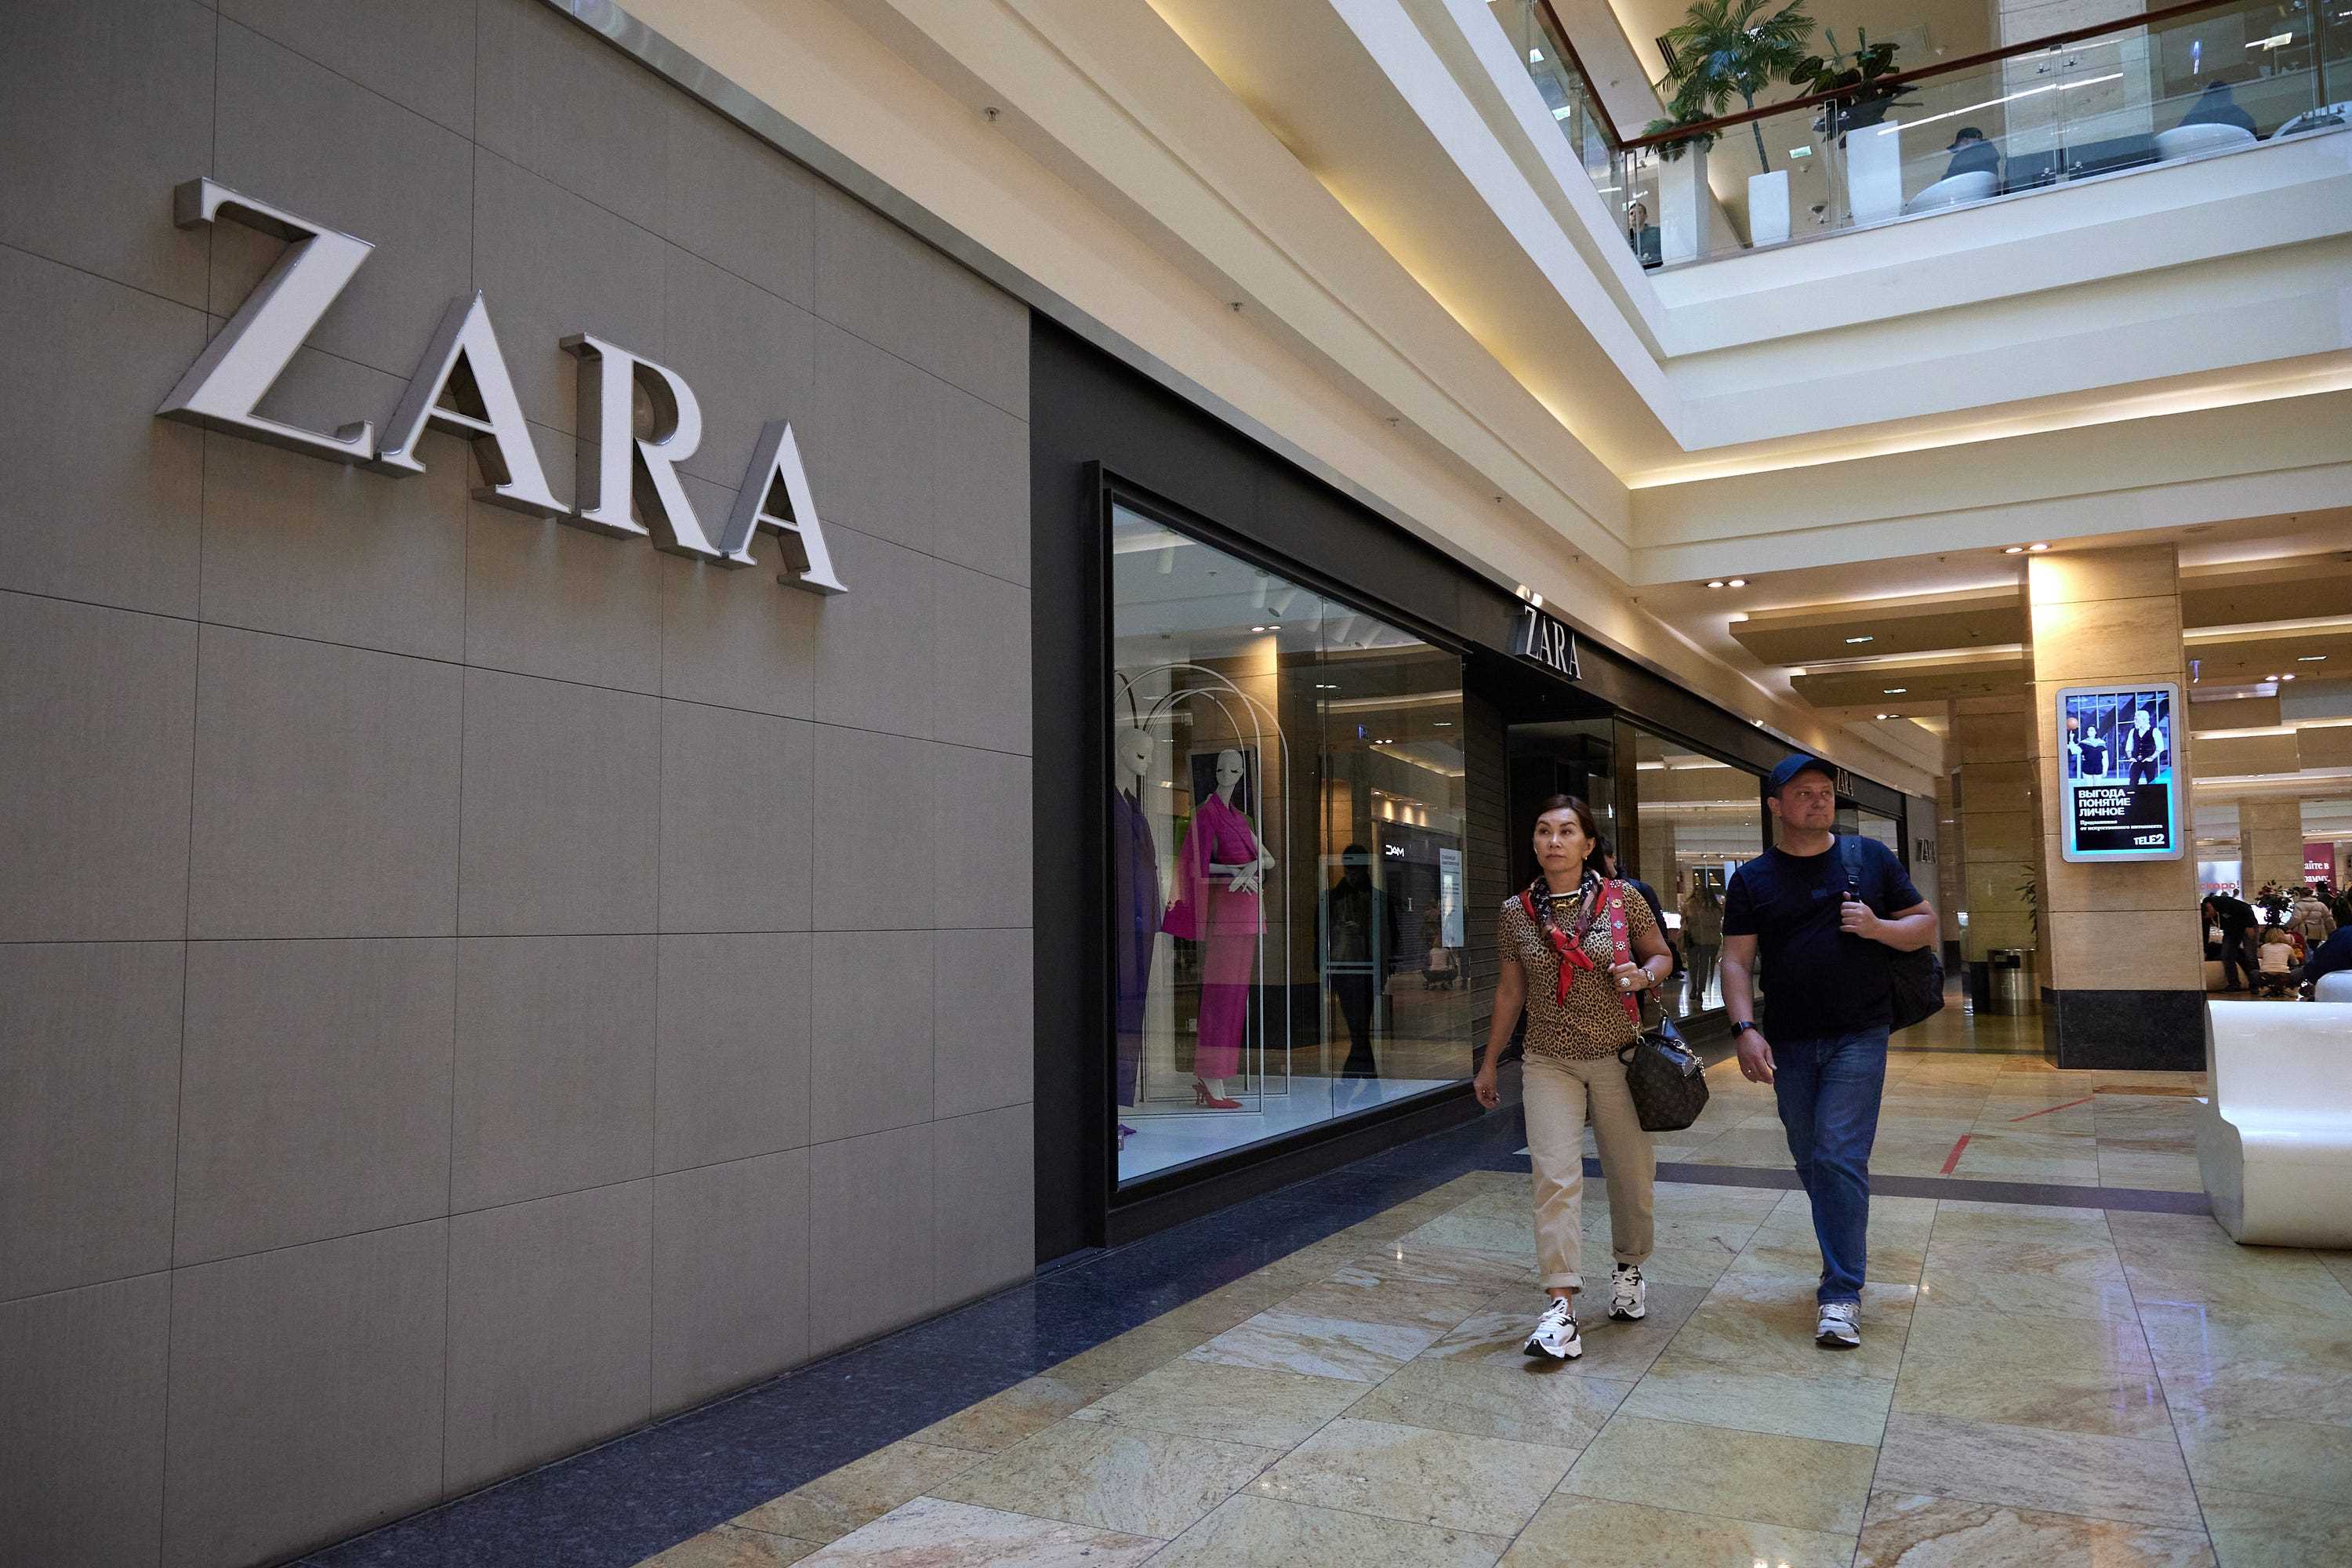 Käufer gingen am 26. März an einem geschlossenen Zara-Geschäft in einem Moskauer Einkaufszentrum vorbei.